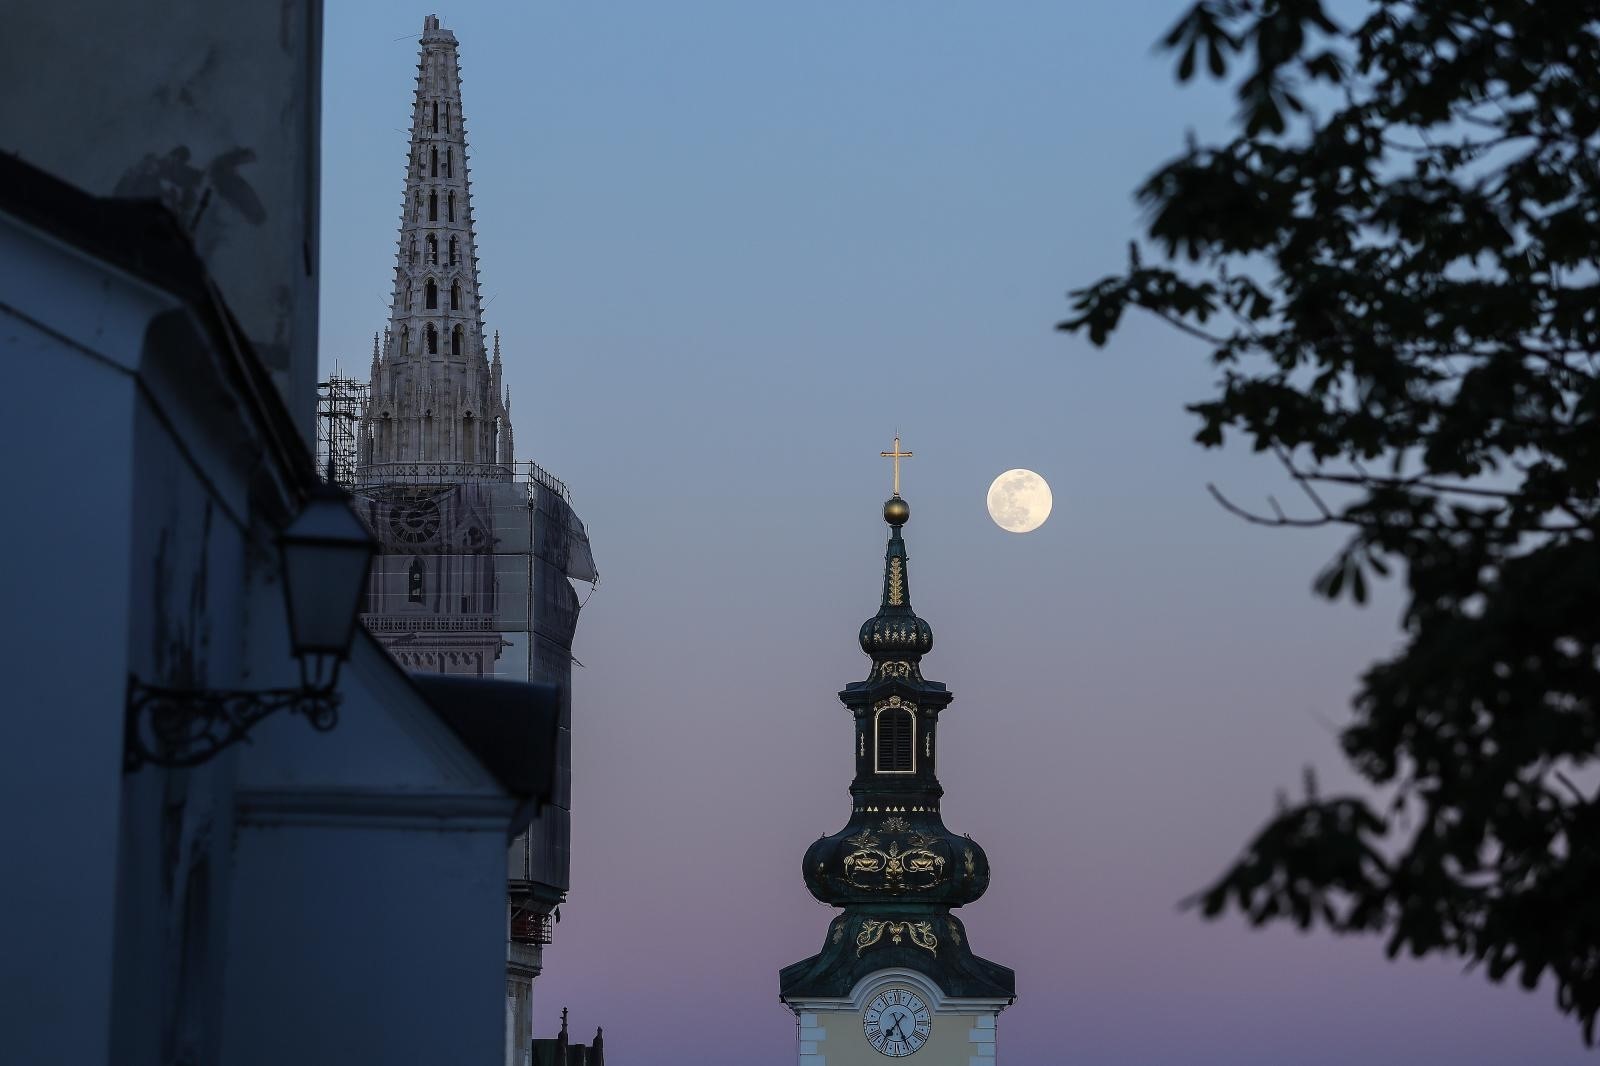 07.04.2020., Zagreb - Izlazak super mjeseca nad Zagrebom. Super mjesec je zapravo puni mjesec koji se pojavljuje u trenutku kad je Mjesec najblize Zemlji, a u tom polozaju izgleda svjetliji i veci od uobicajenog punog mjeseca. Photo: Luka Stanzl/PIXSELL